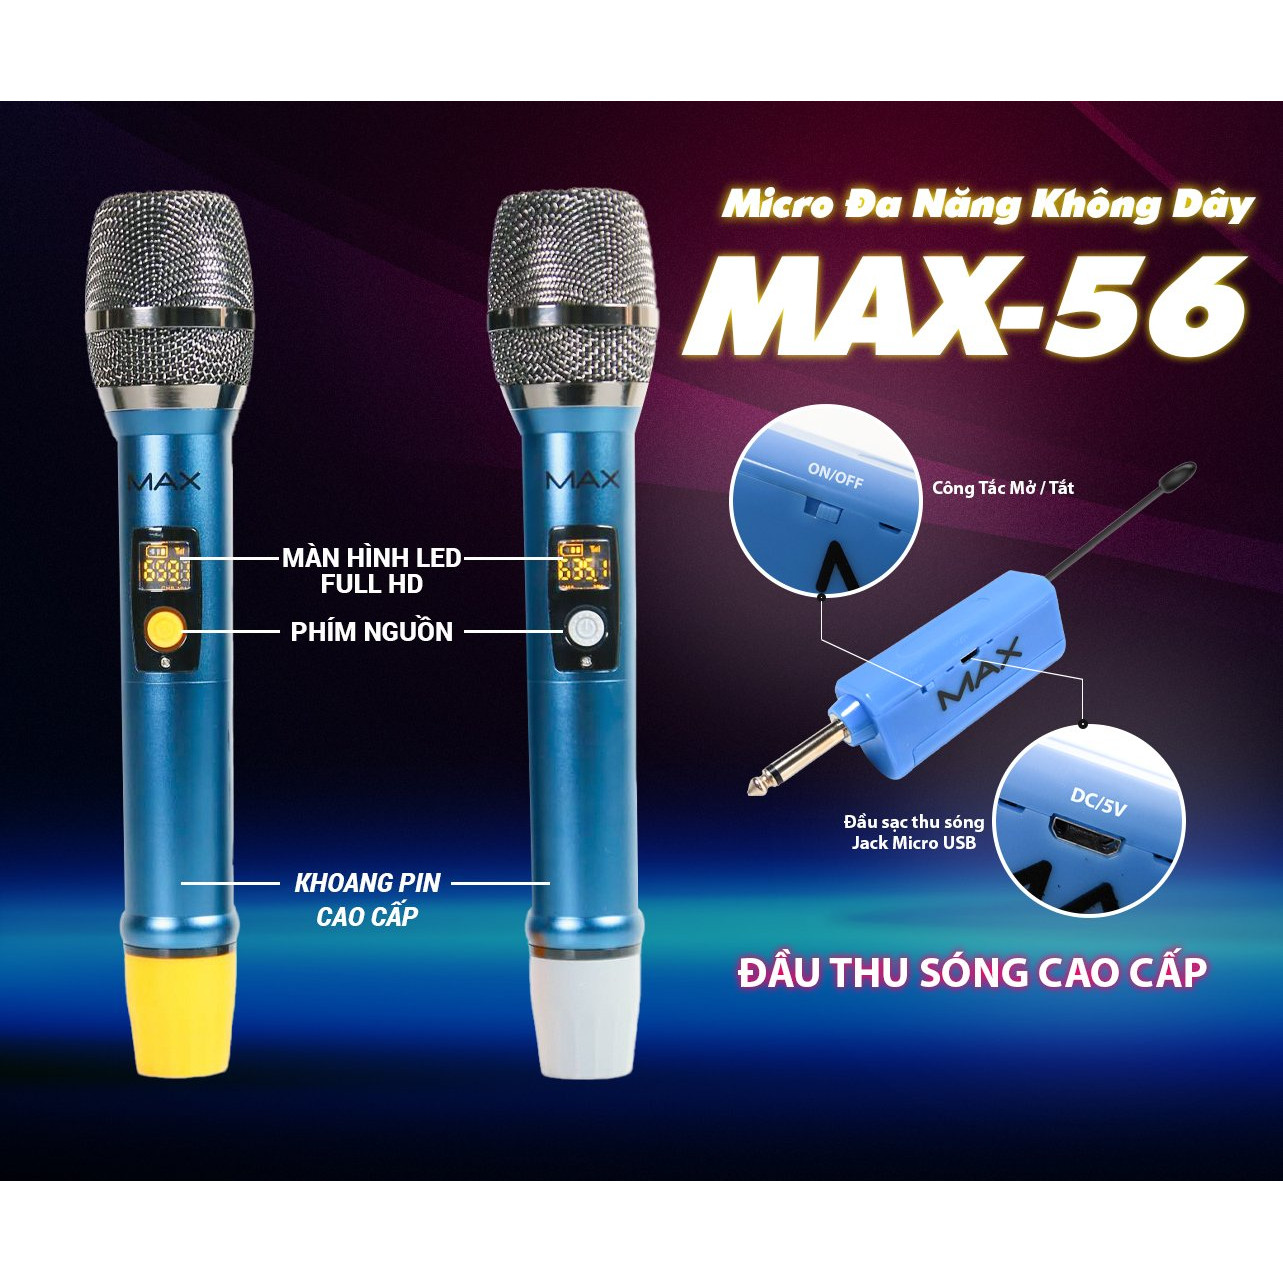 Bộ 2 Micro không dây đa năng Max 56 và Max 36 - Nâng cấp từ Max 39 - Hút âm tốt, Hạn chế hú rít - Sạc pin ngay trên mic - Pin sạc dung lượng cao - Màn hình LCD hiển thị tần số - Phù hợp mọi thiết bị - Micro karaoke - Hàng chính hãng